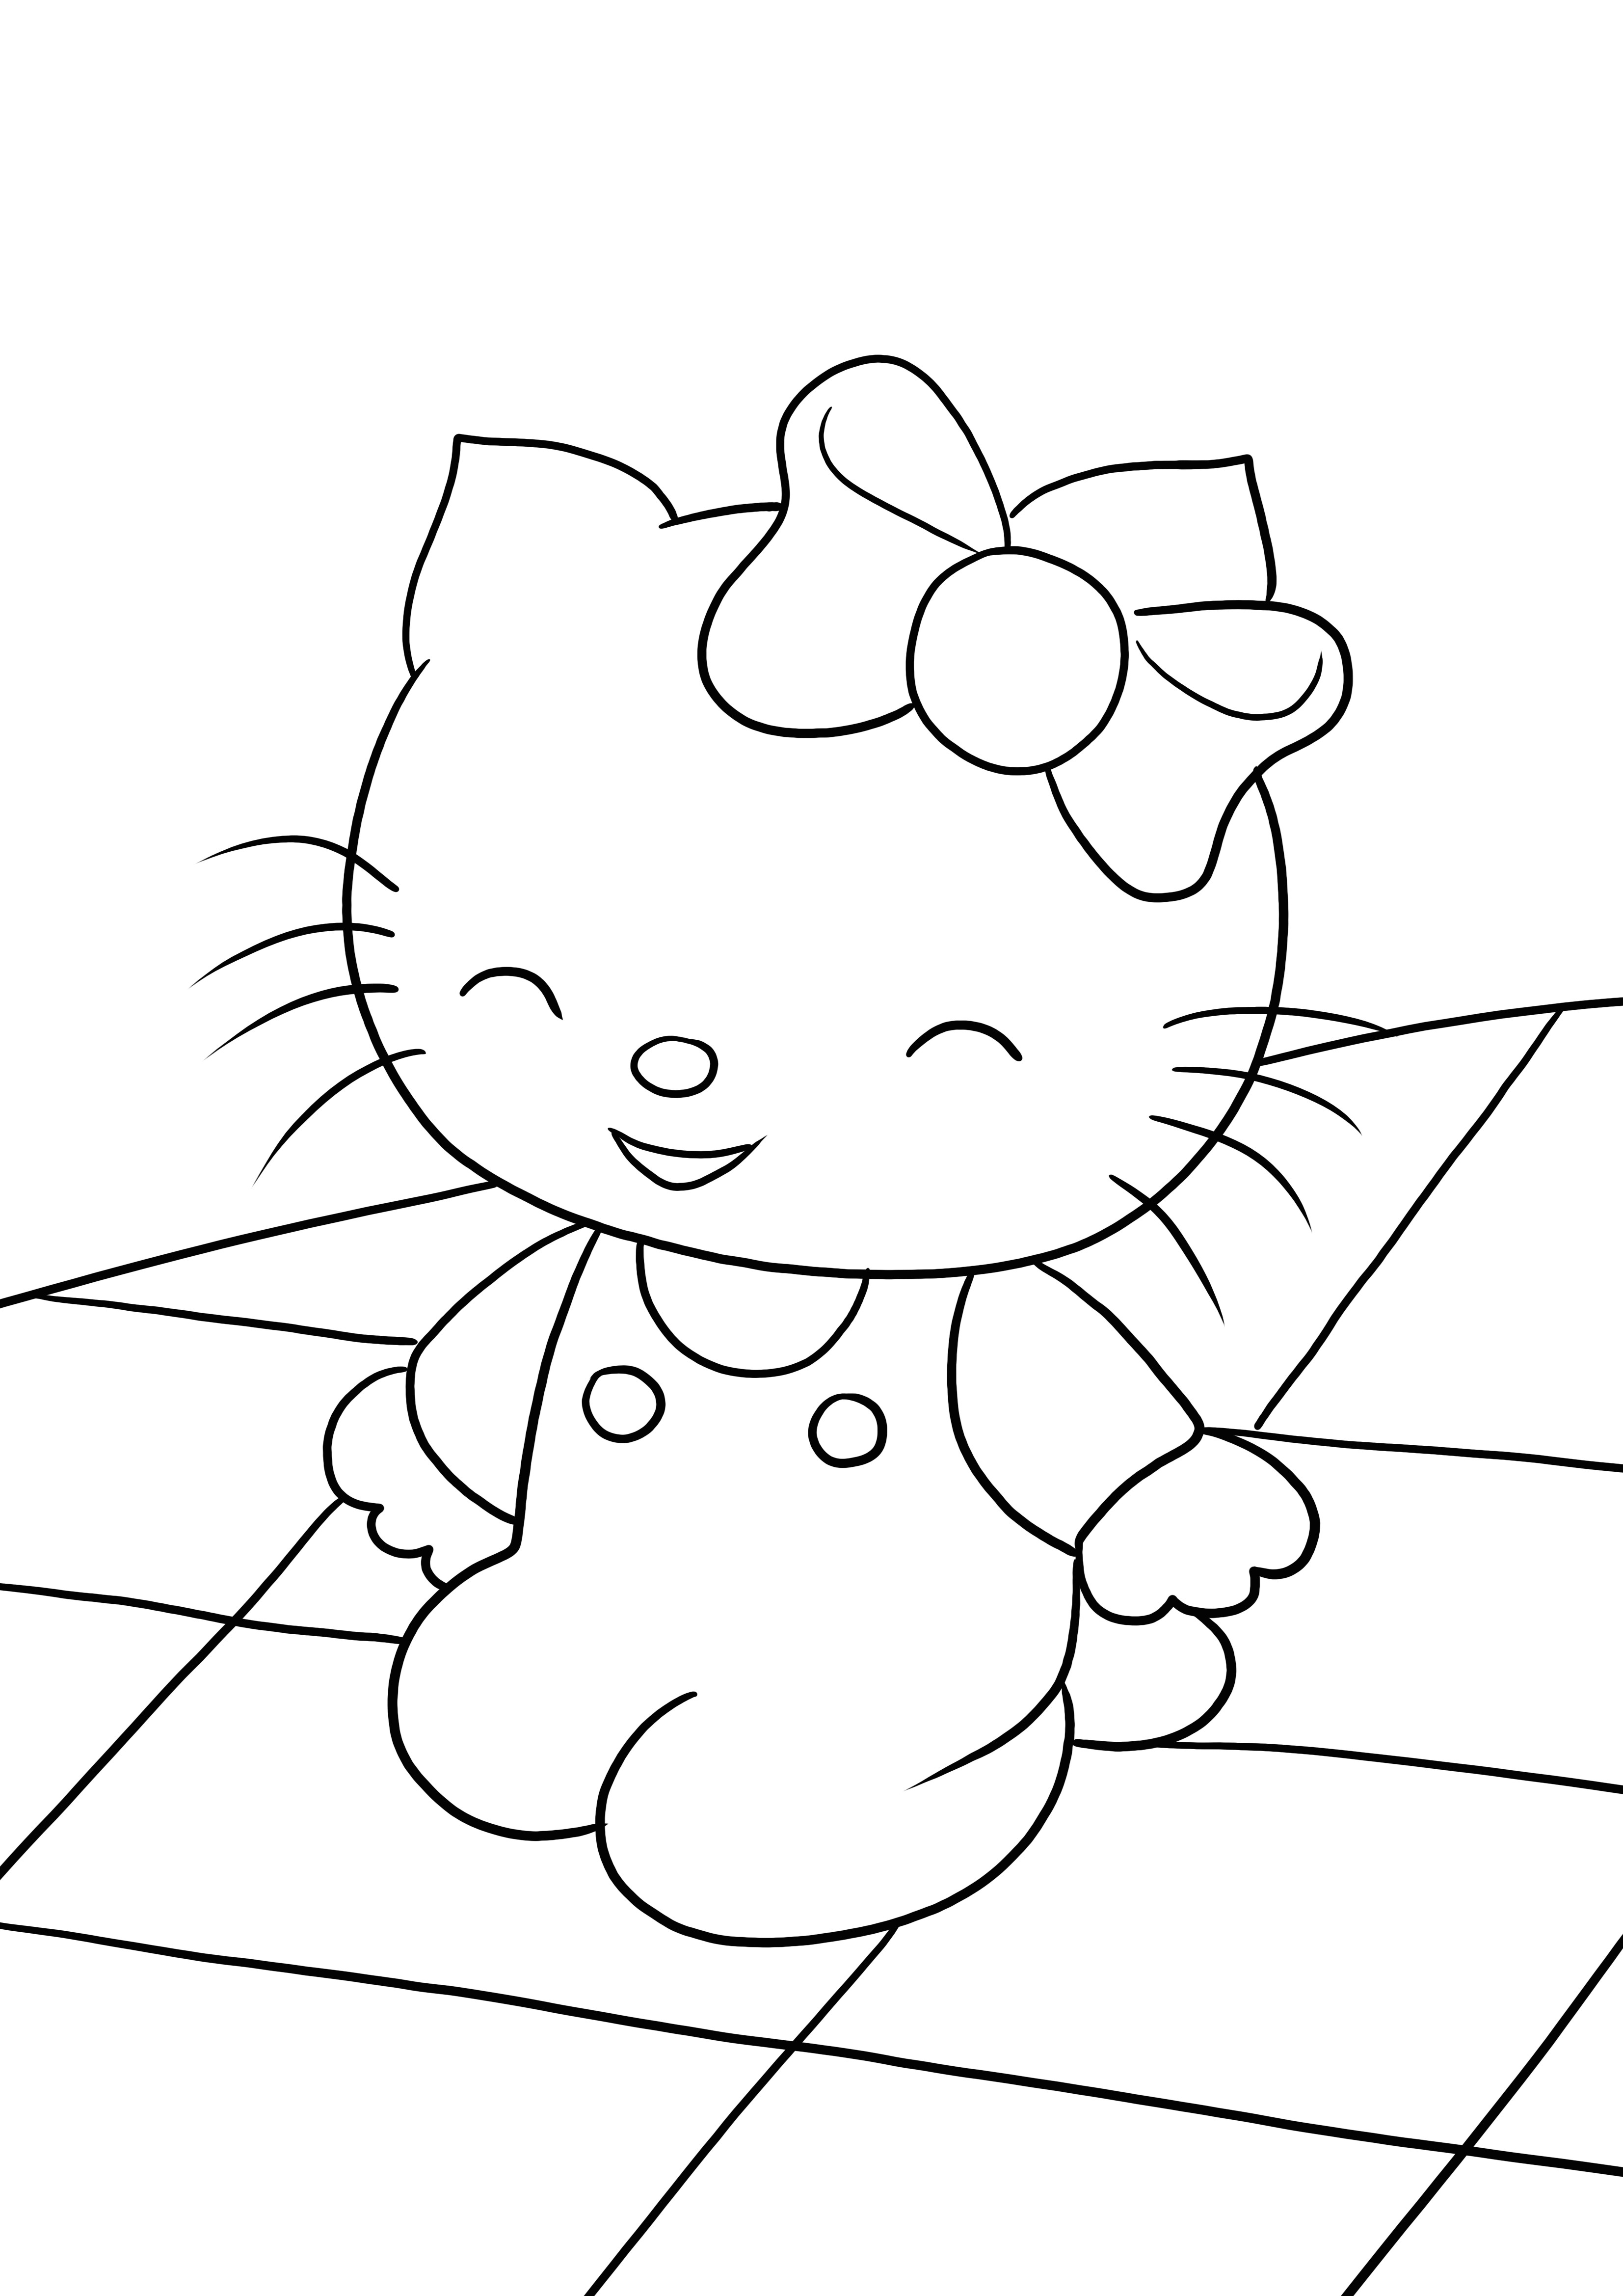 Happy Hello Kitty este aici și este gata să fie colorată și tipărită gratuit